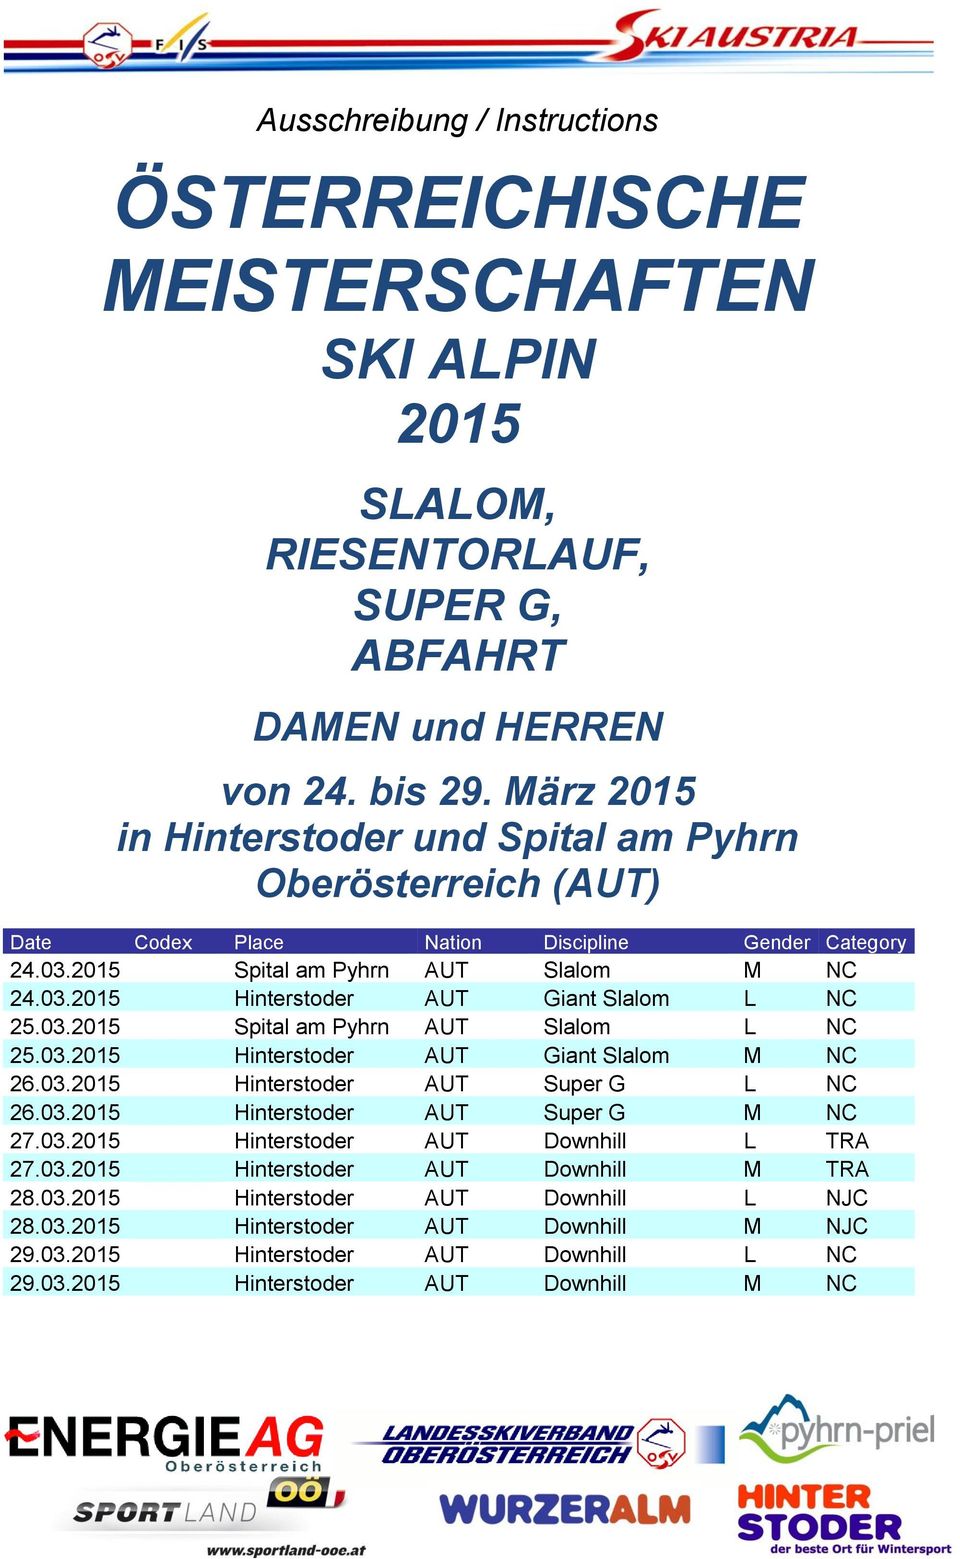 03.2015 Spital am Pyhrn AUT Slalom L NC 25.03.2015 Hinterstoder AUT Giant Slalom M NC 26.03.2015 Hinterstoder AUT Super G L NC 26.03.2015 Hinterstoder AUT Super G M NC 27.03.2015 Hinterstoder AUT Downhill L TRA 27.